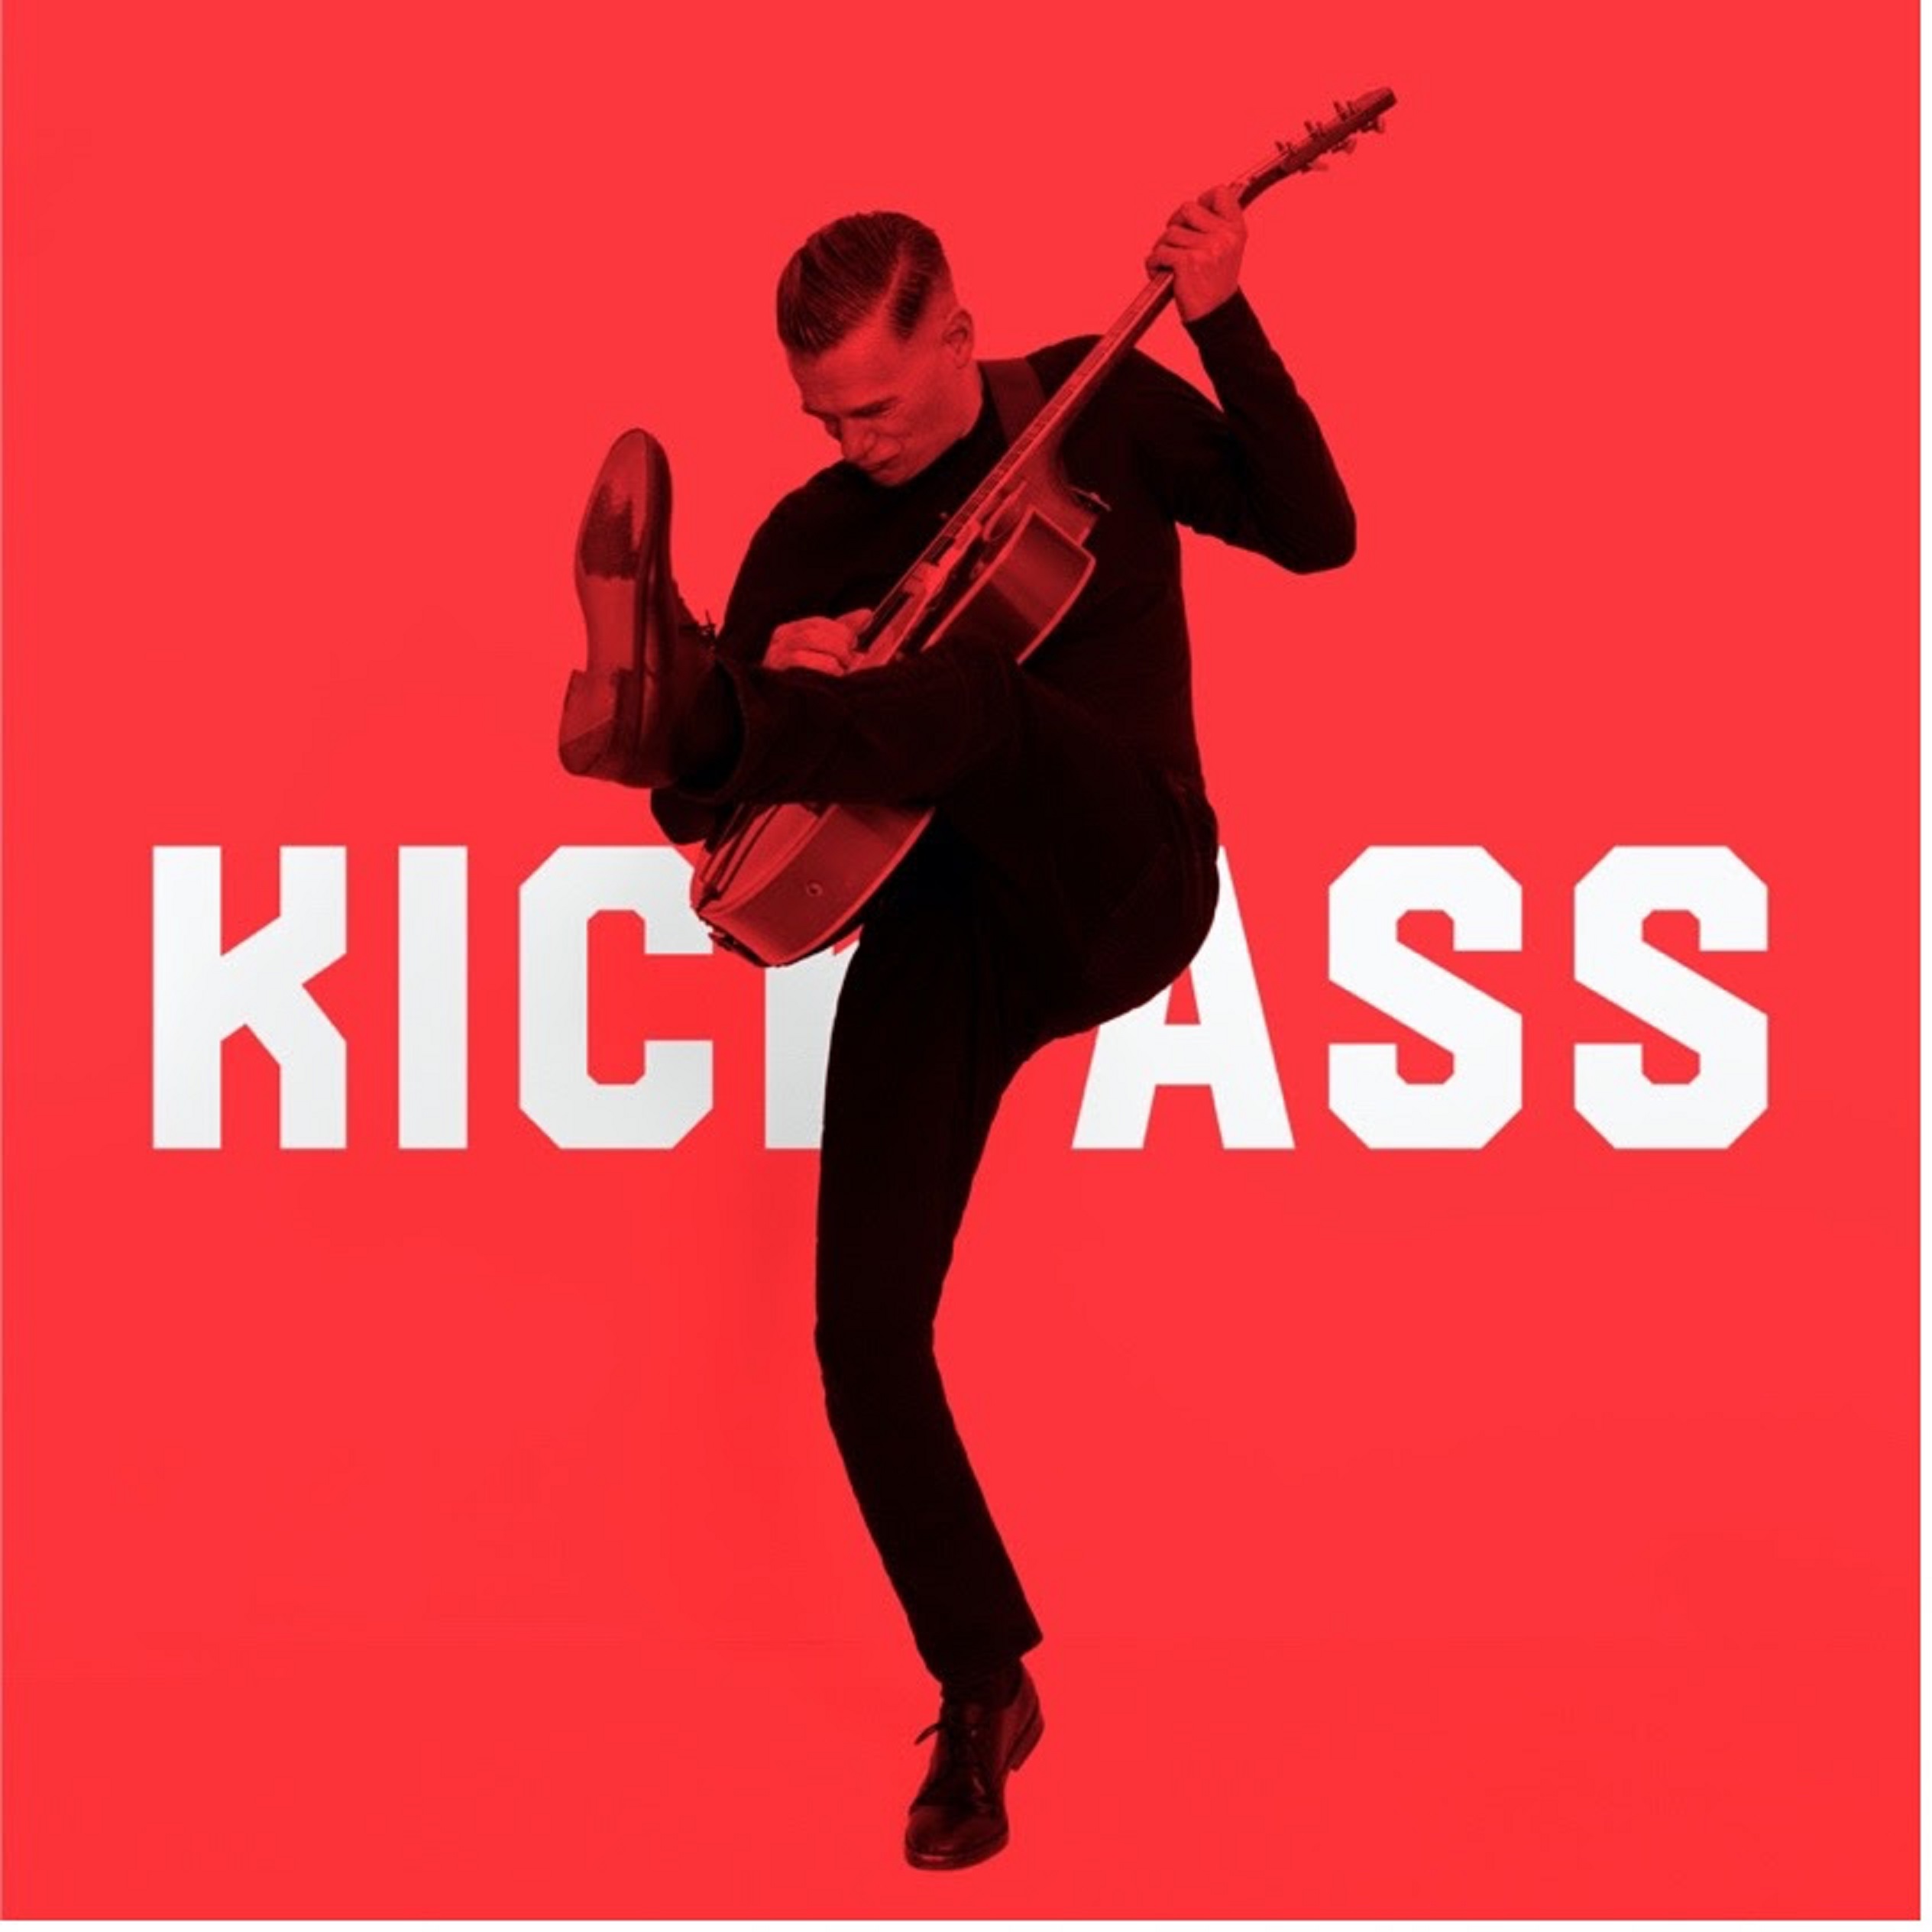 Bryan Adams releases new song 'Kick Ass'